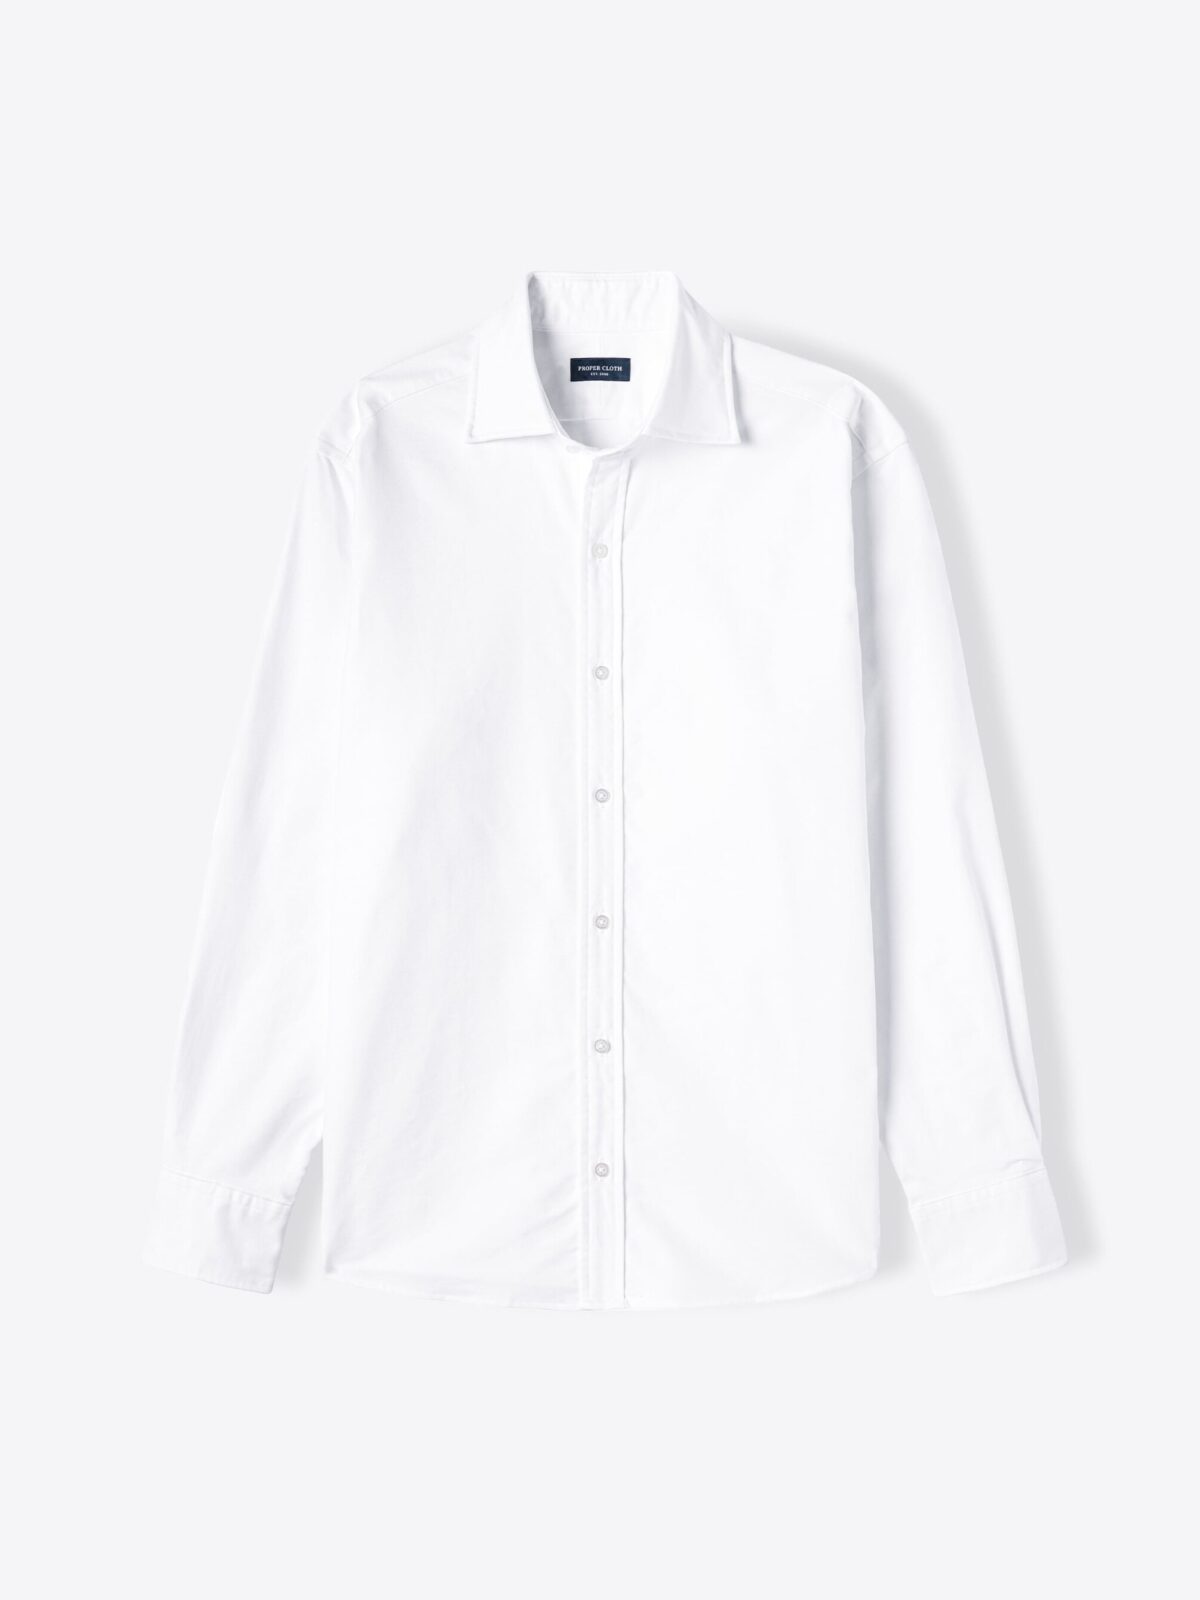 Aueoeo Mens Dress Shirts, Men's Cotton Linen Shirt Long Sleeve Collar  Button Pocket Casual Flower Shirt Tops Turndown Collar Blouse 